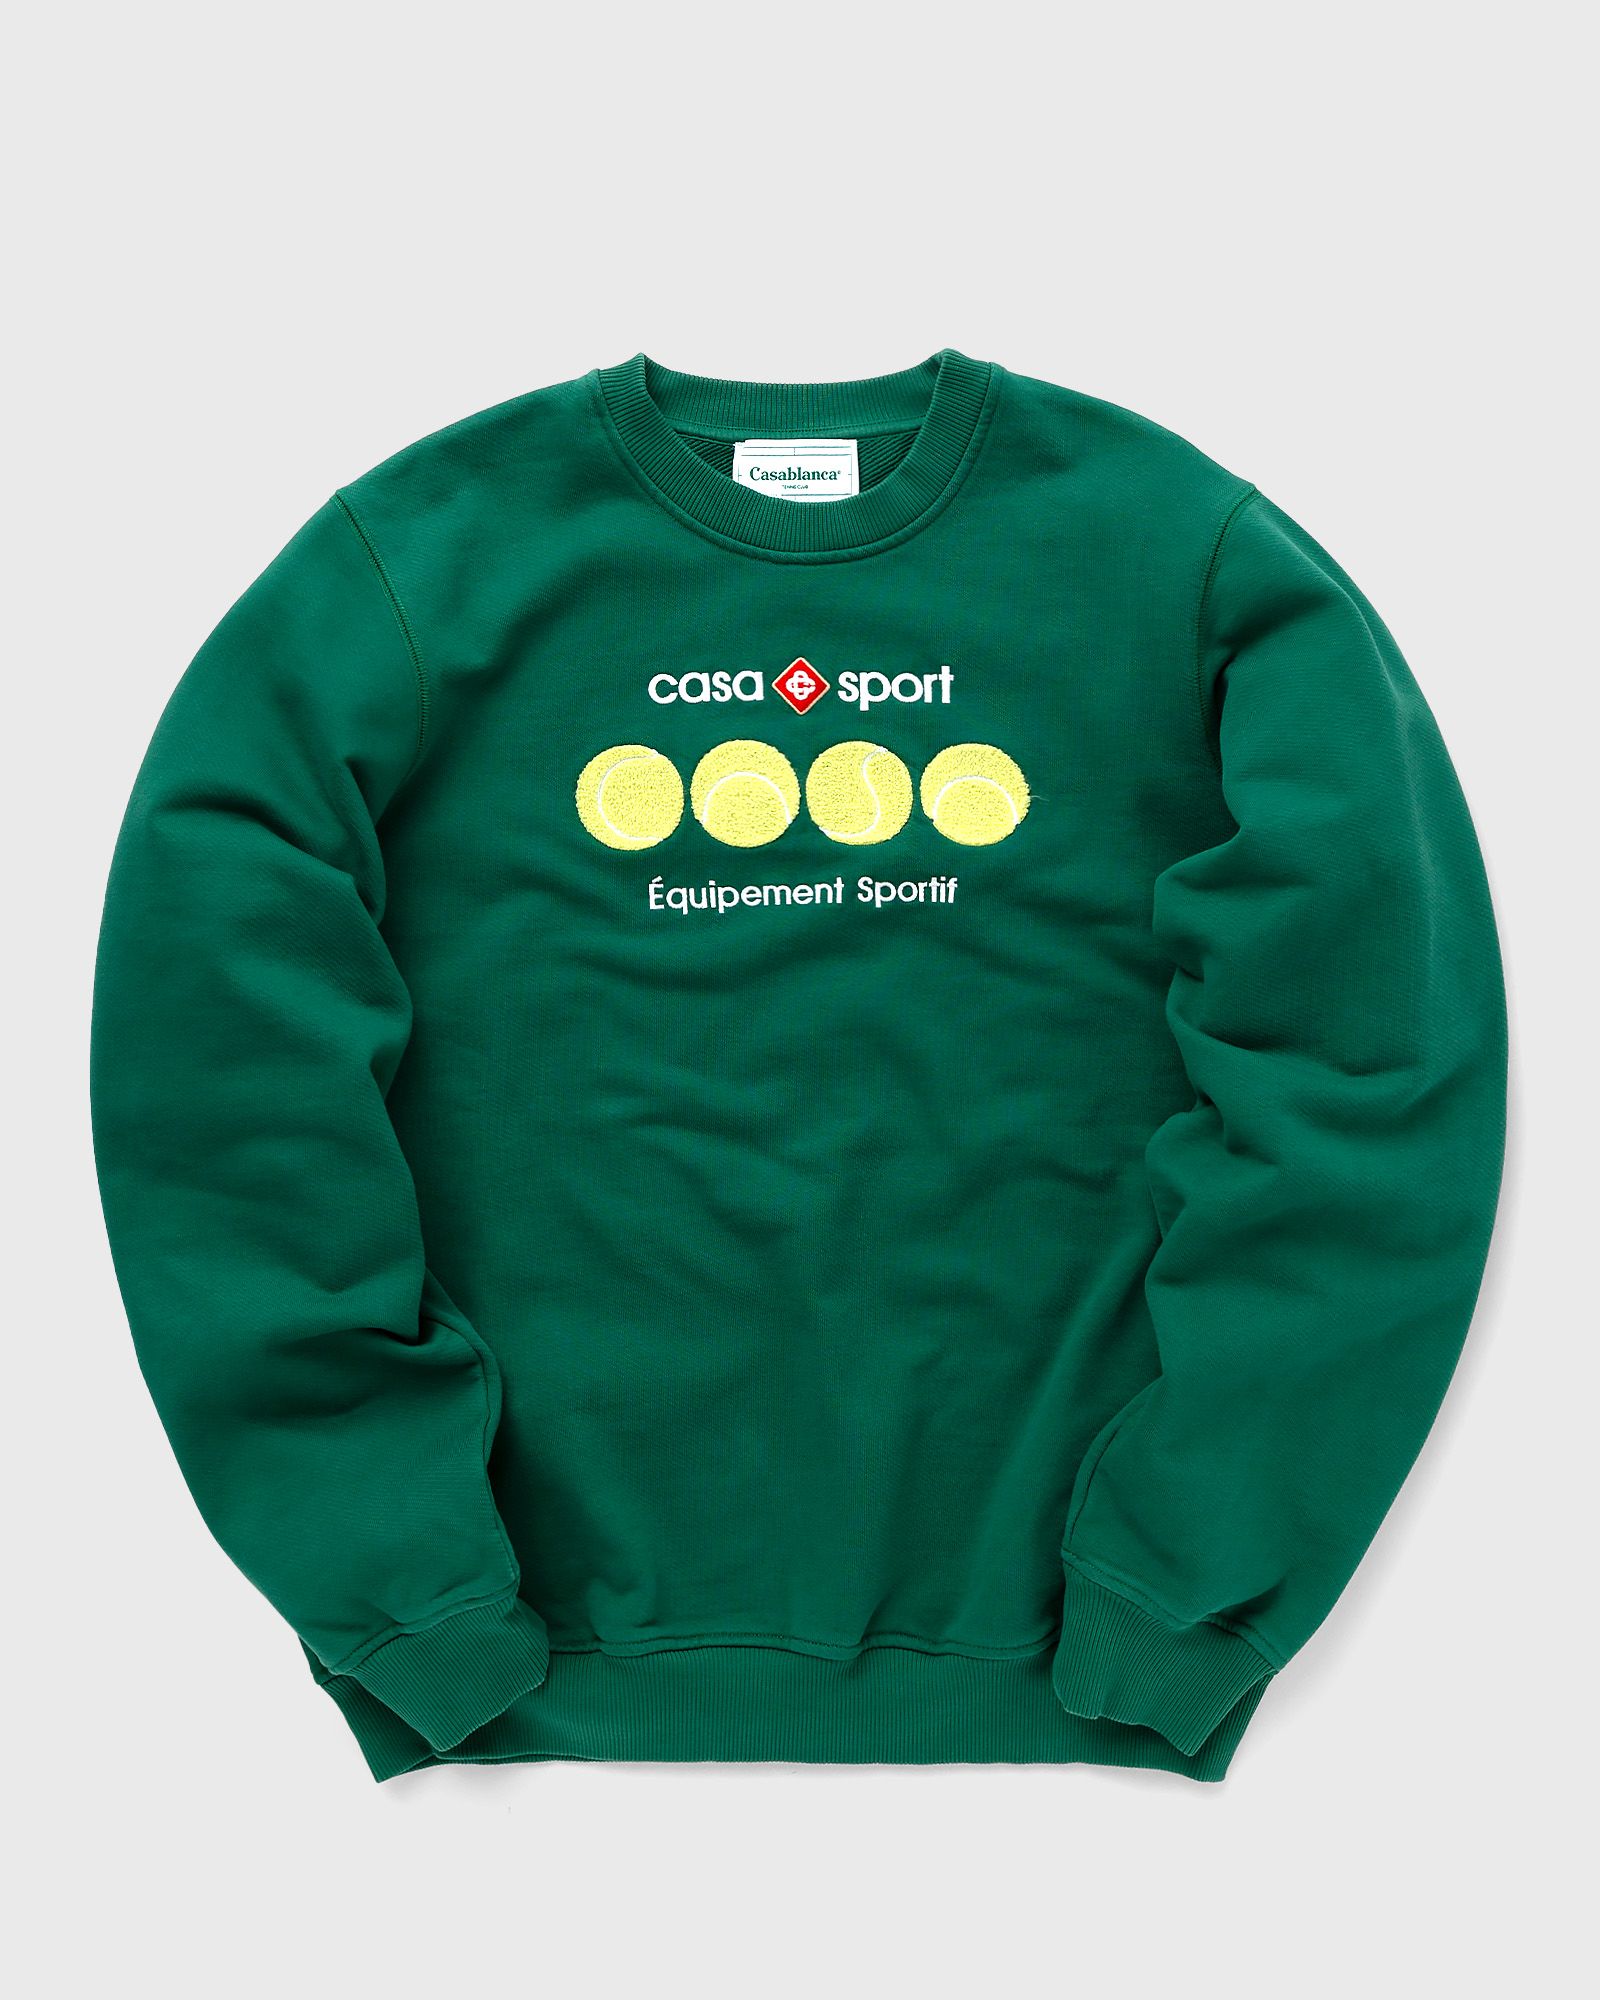 Casablanca - casa sport tennis balls chenille embroidered sweat men sweatshirts green in größe:xxl